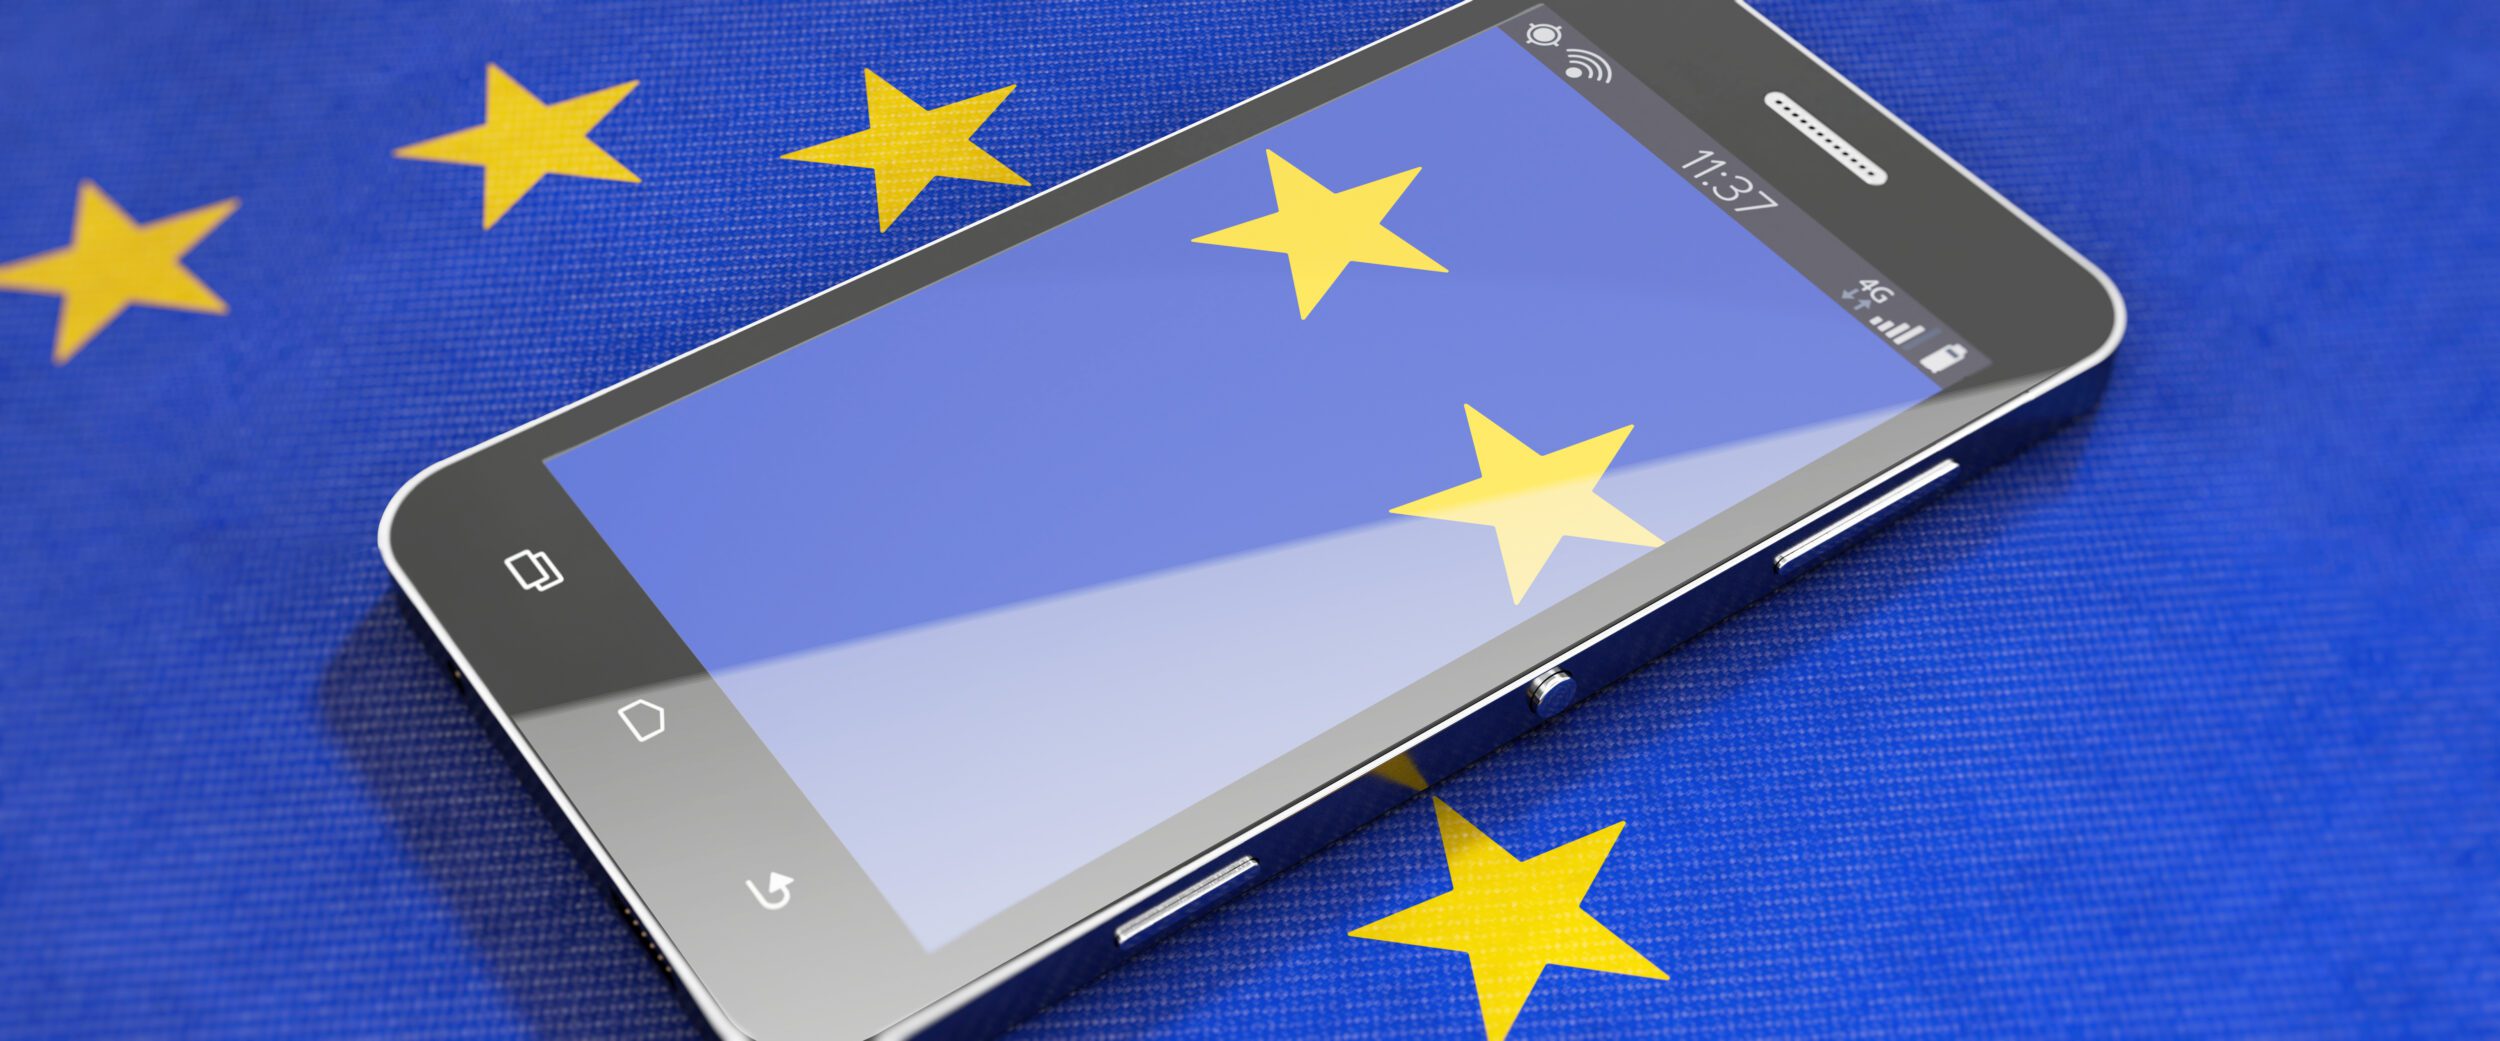 EU Flag over a phone